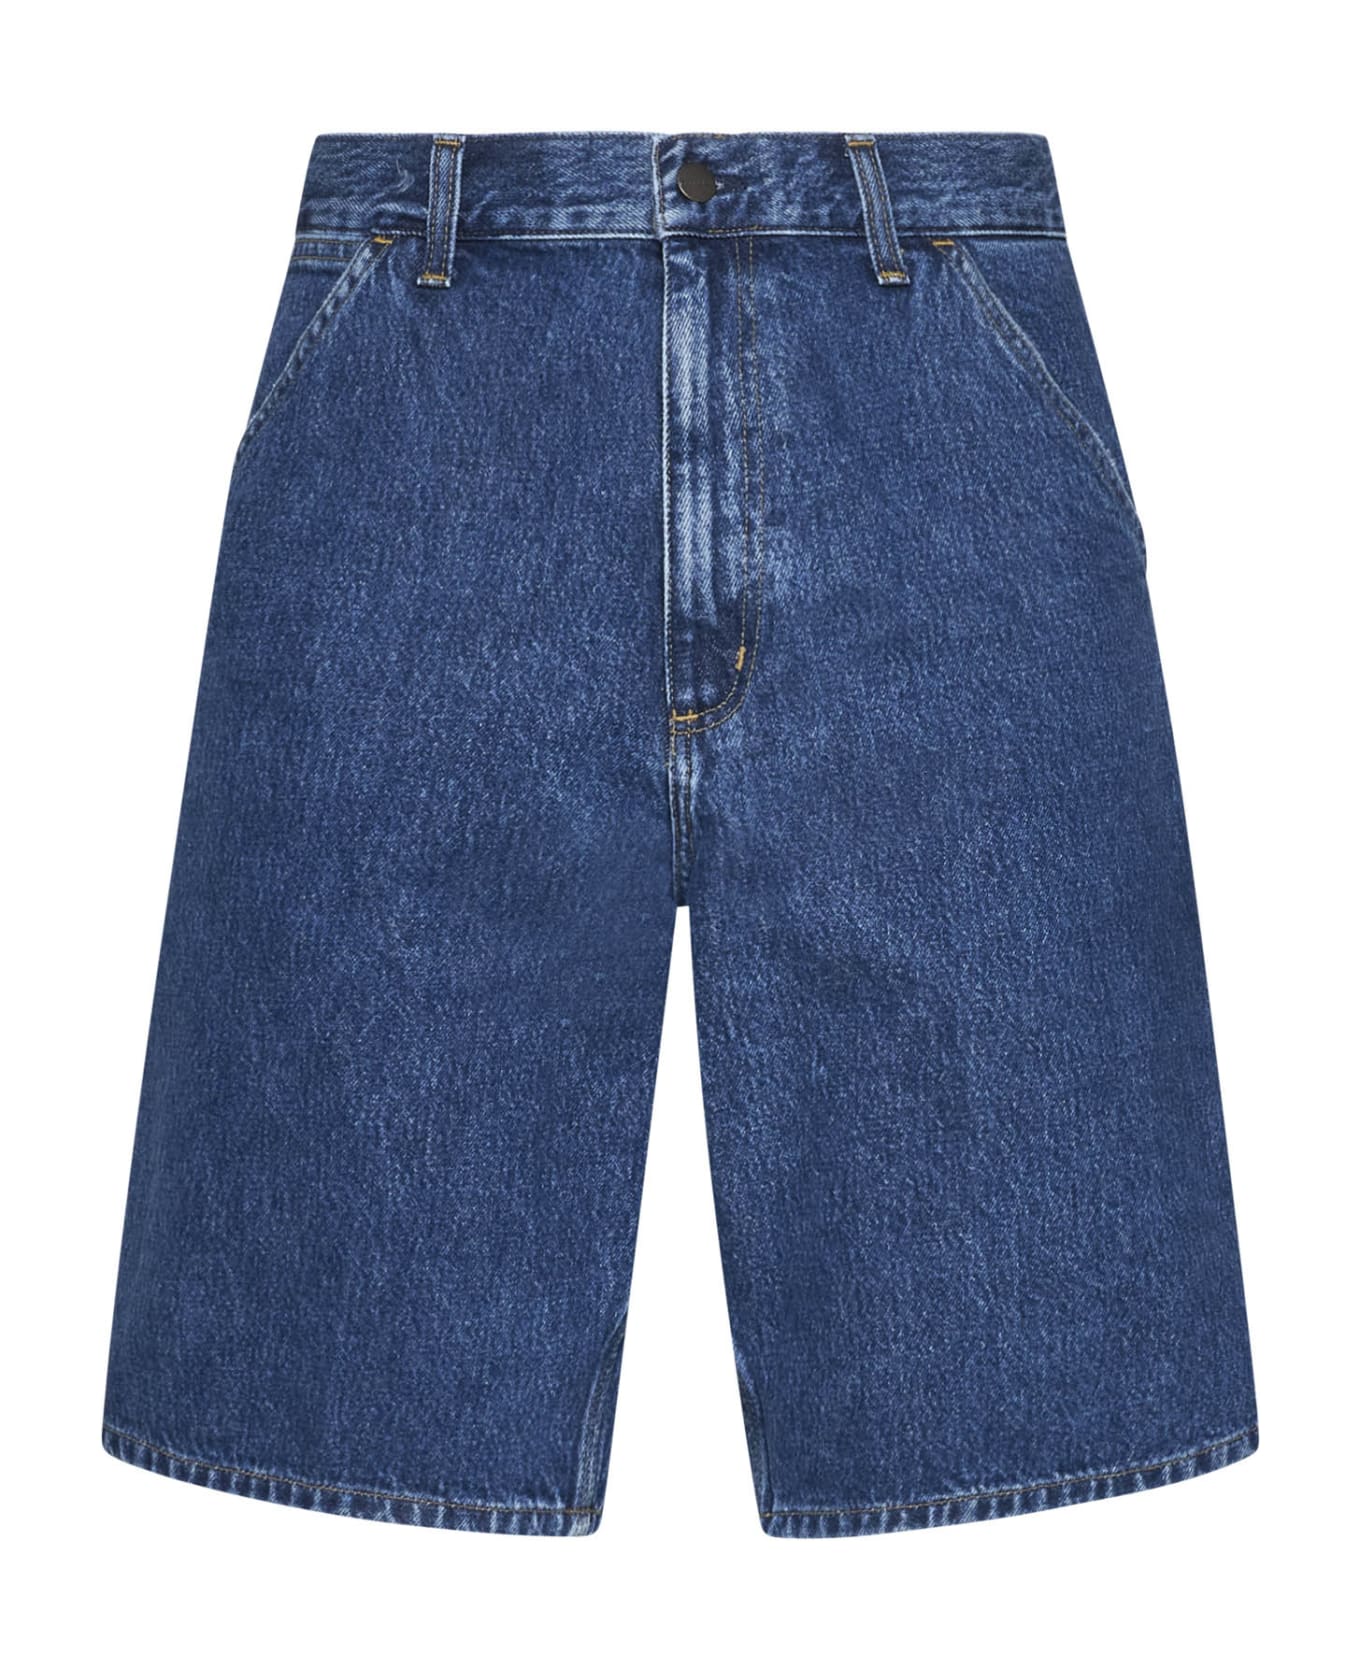 Carhartt Shorts - Blue stone washed